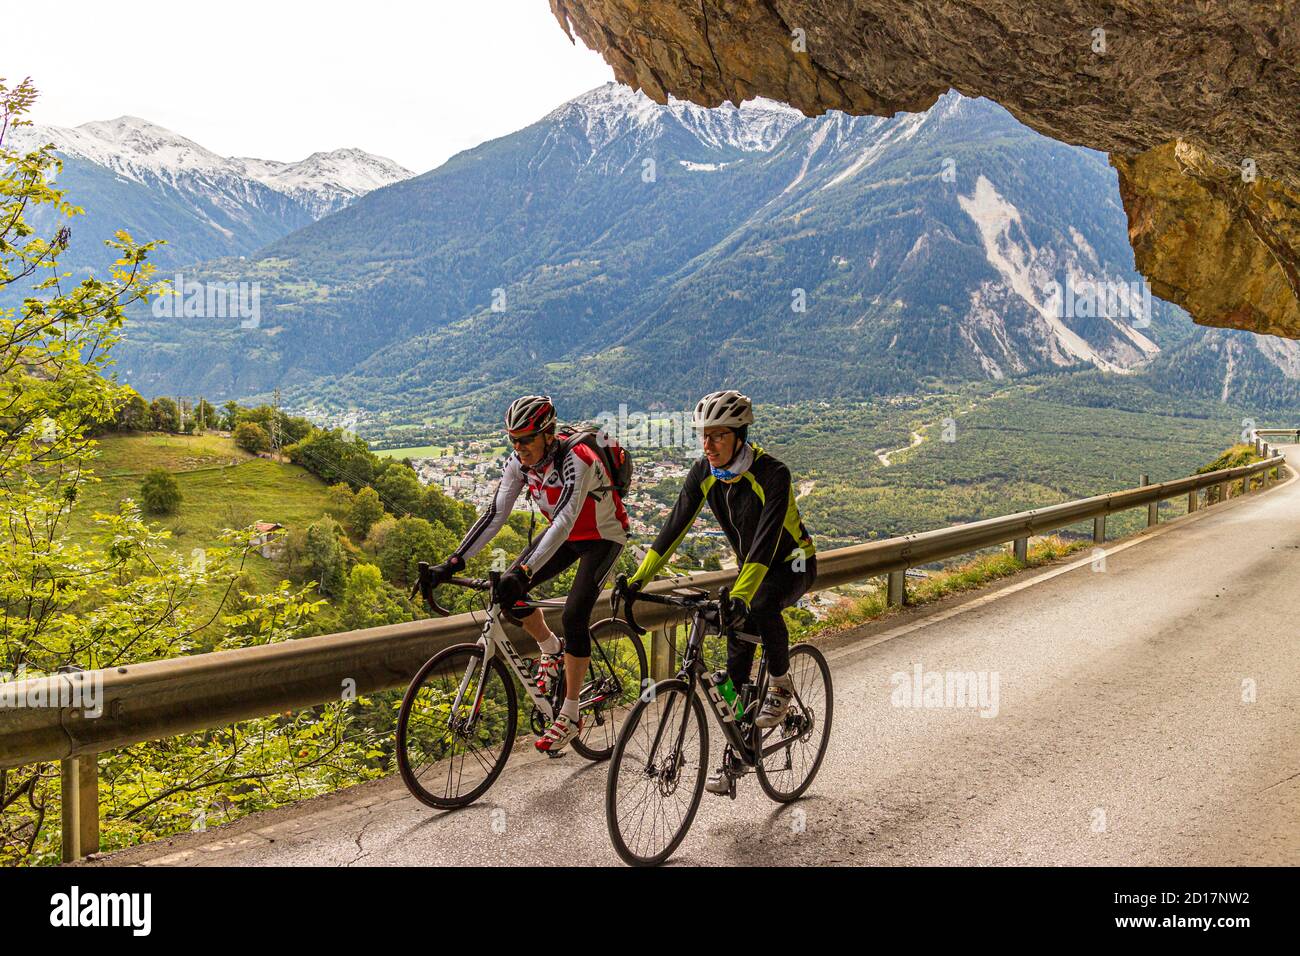 Avec des vélos de course dans les Alpes à Leuk, en Suisse.Avec le vélo de course sur l'asphalte.Étudiante sportive Julius Berg sur la route avec le guide de vélo Roland Holzer d'Albinen. Banque D'Images